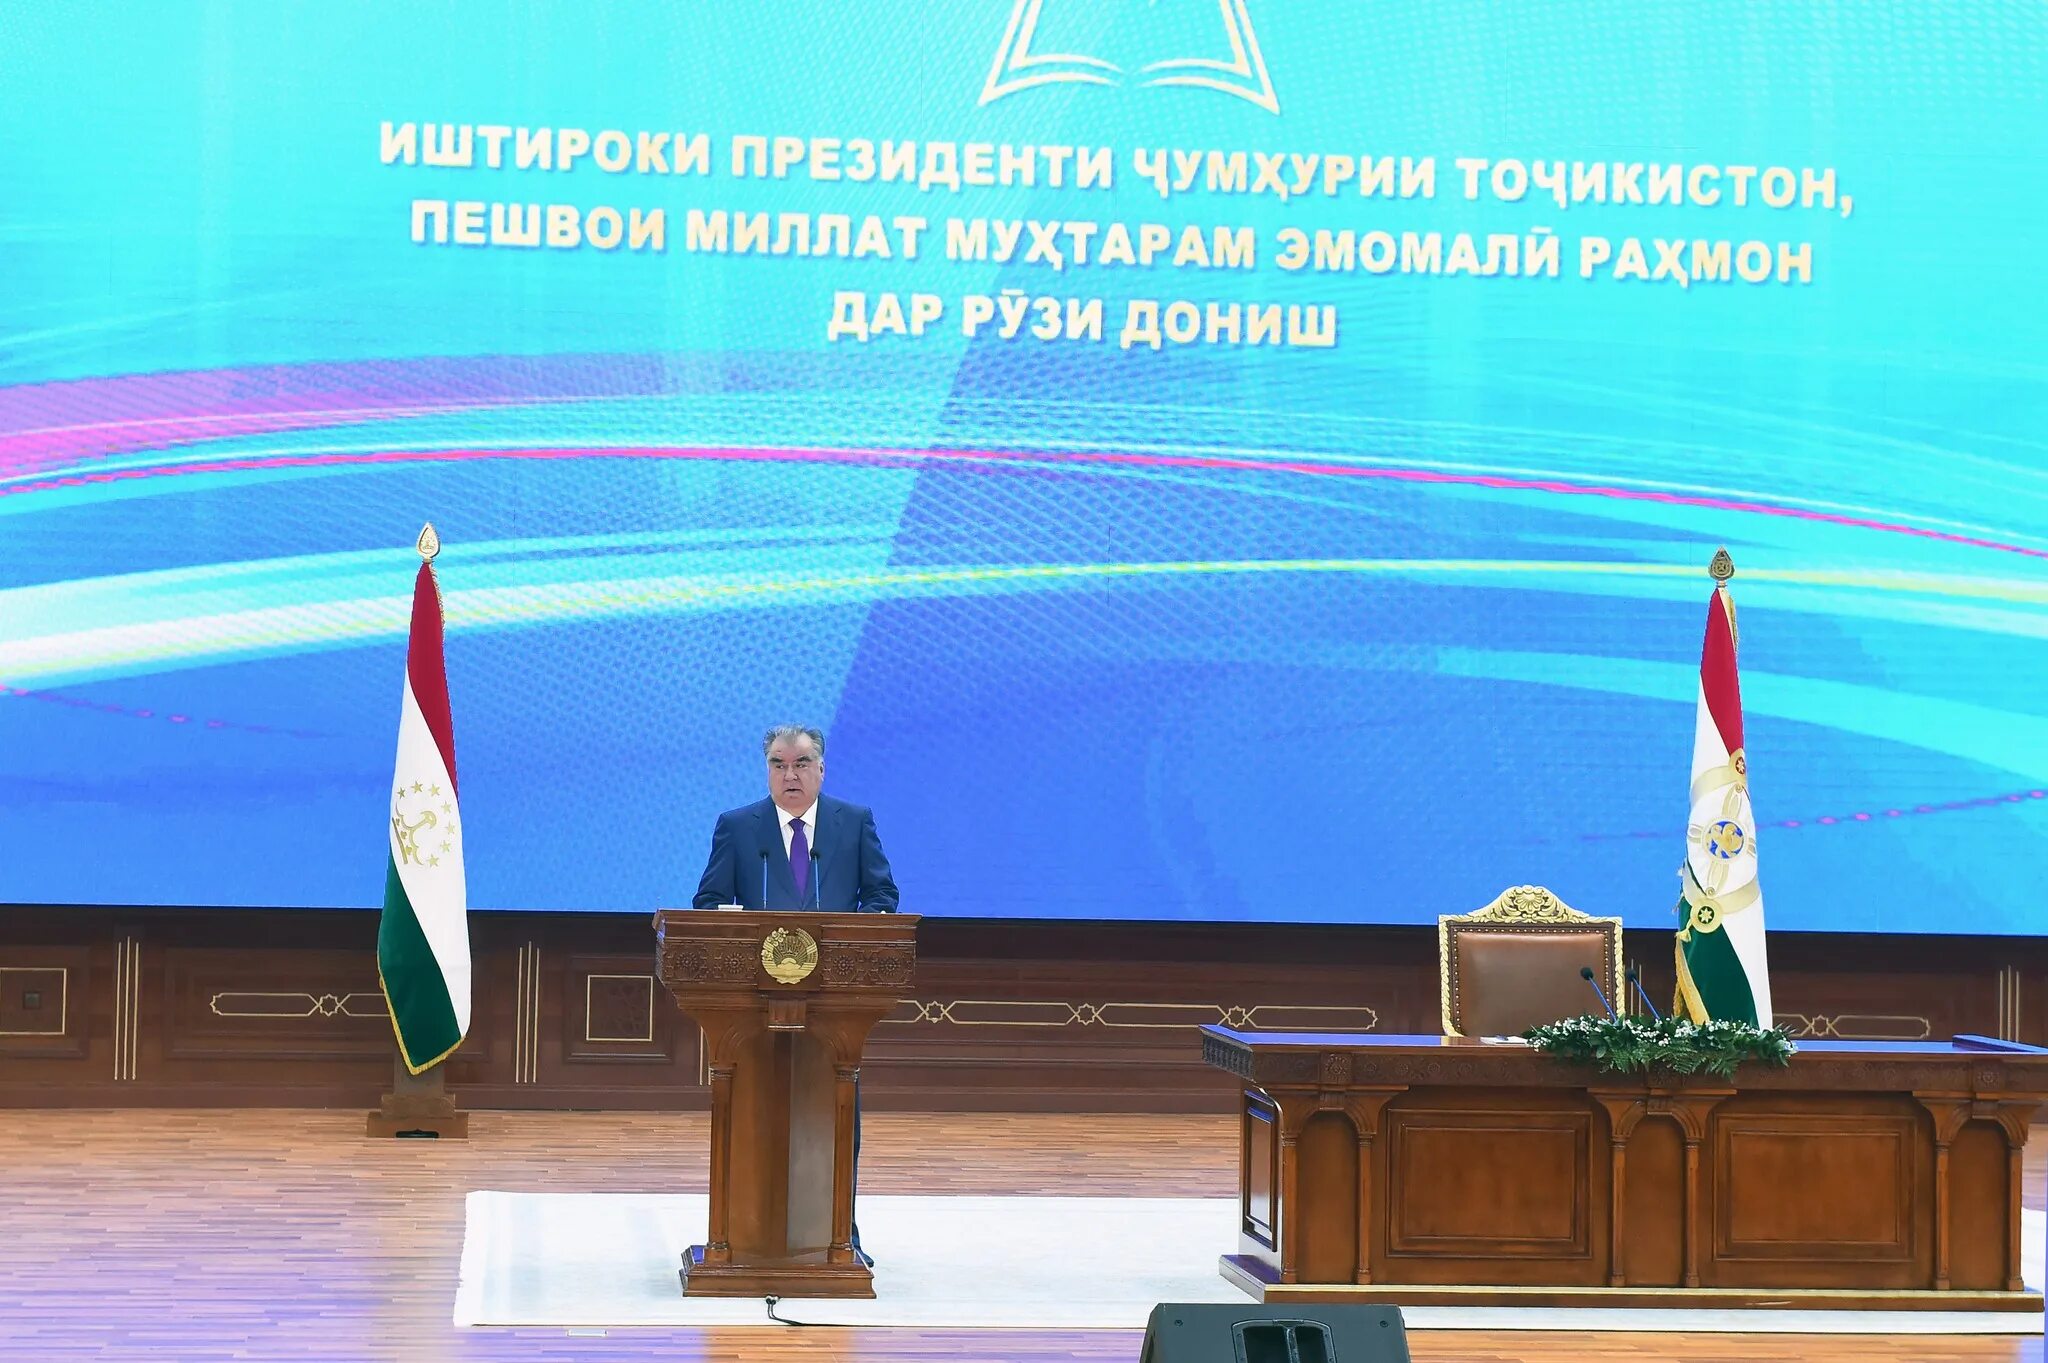 Е дониш. Эмомали Рахмон ООН-2022?. День независимости Республики Таджикистан. Встреча президентов в Таджикистане.